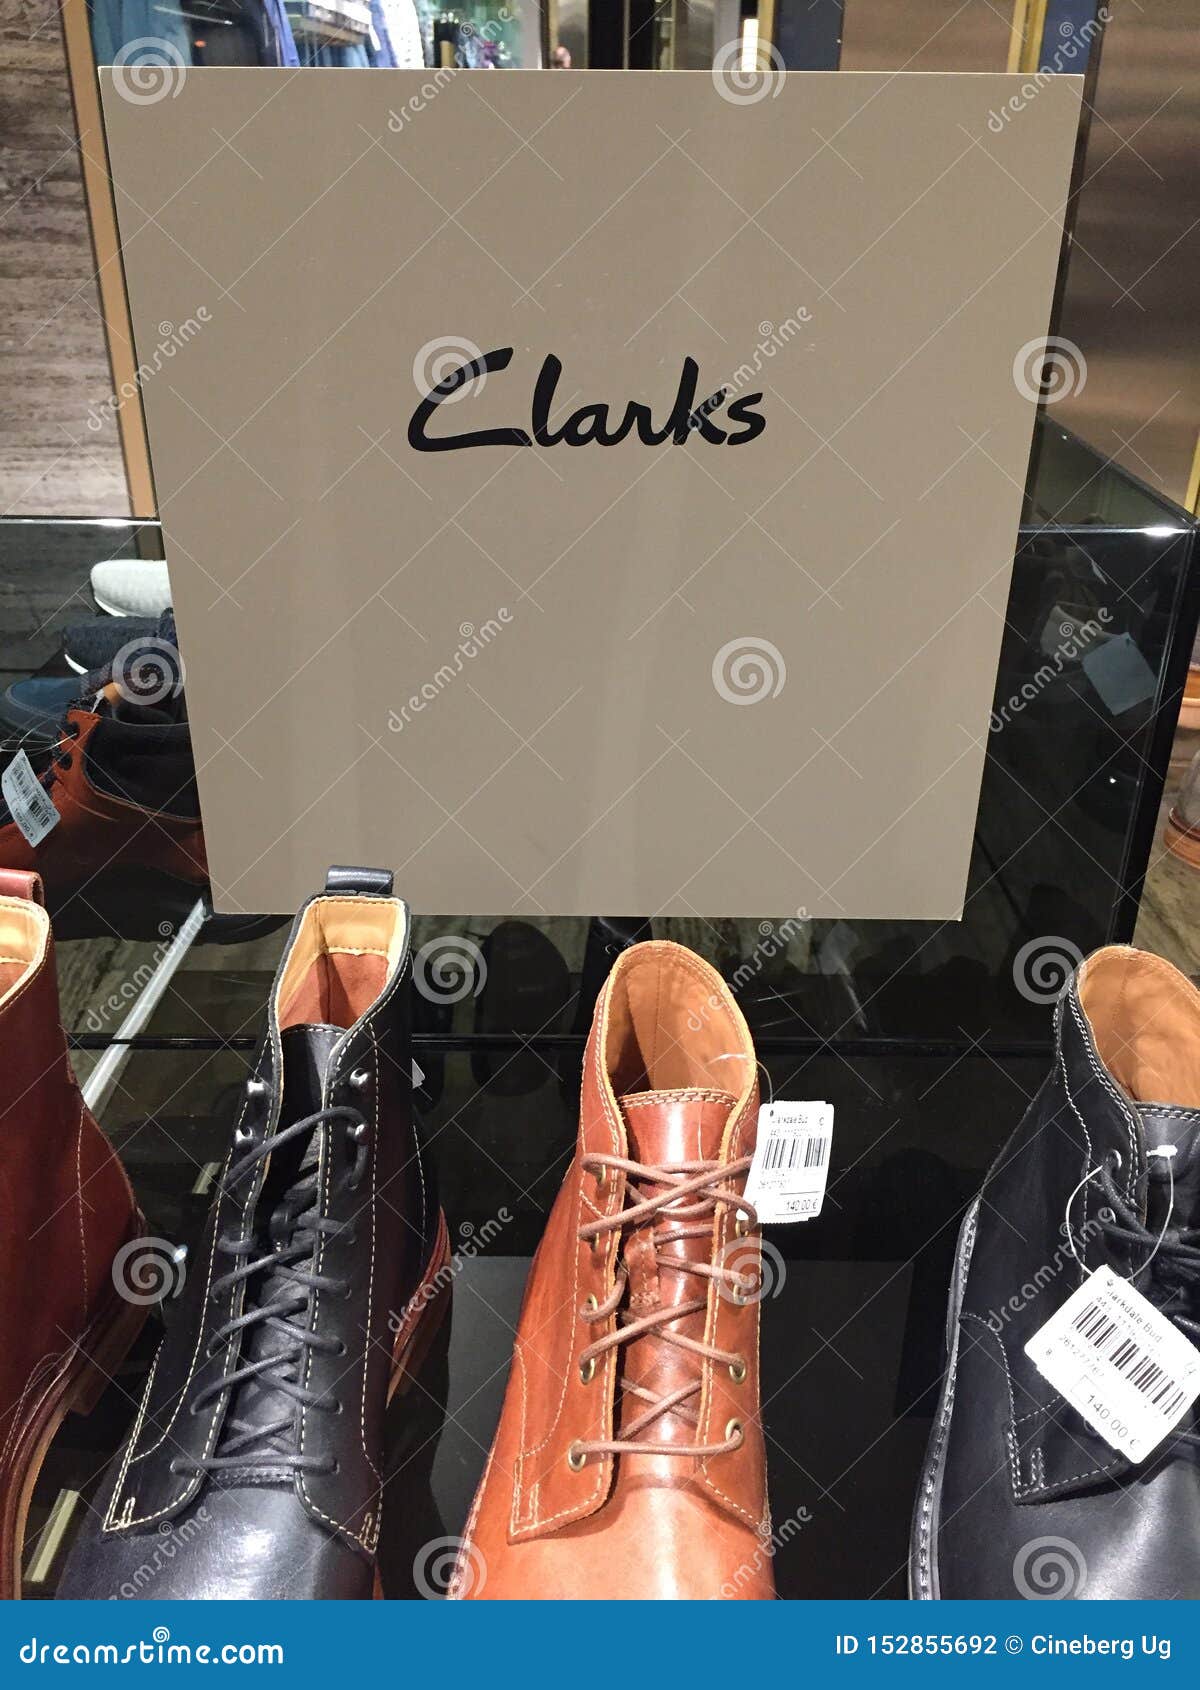 Zapatos de Clarks editorial. Imagen de alameda